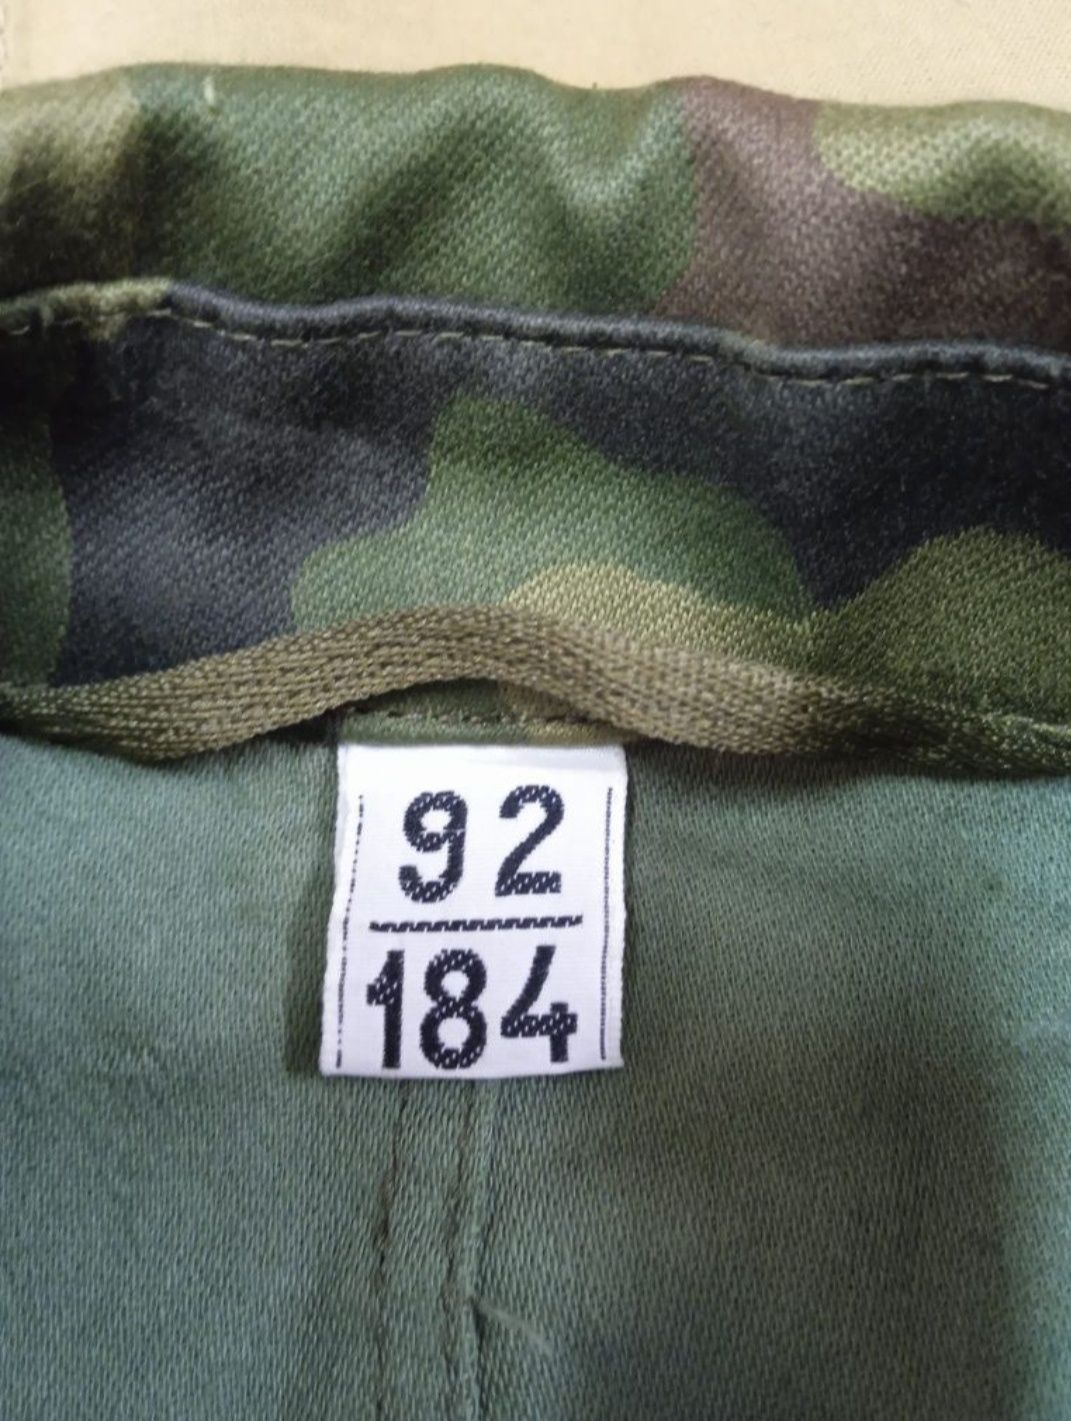 Oryginalny mundur polowy wzór 93, rozmiar  92/184